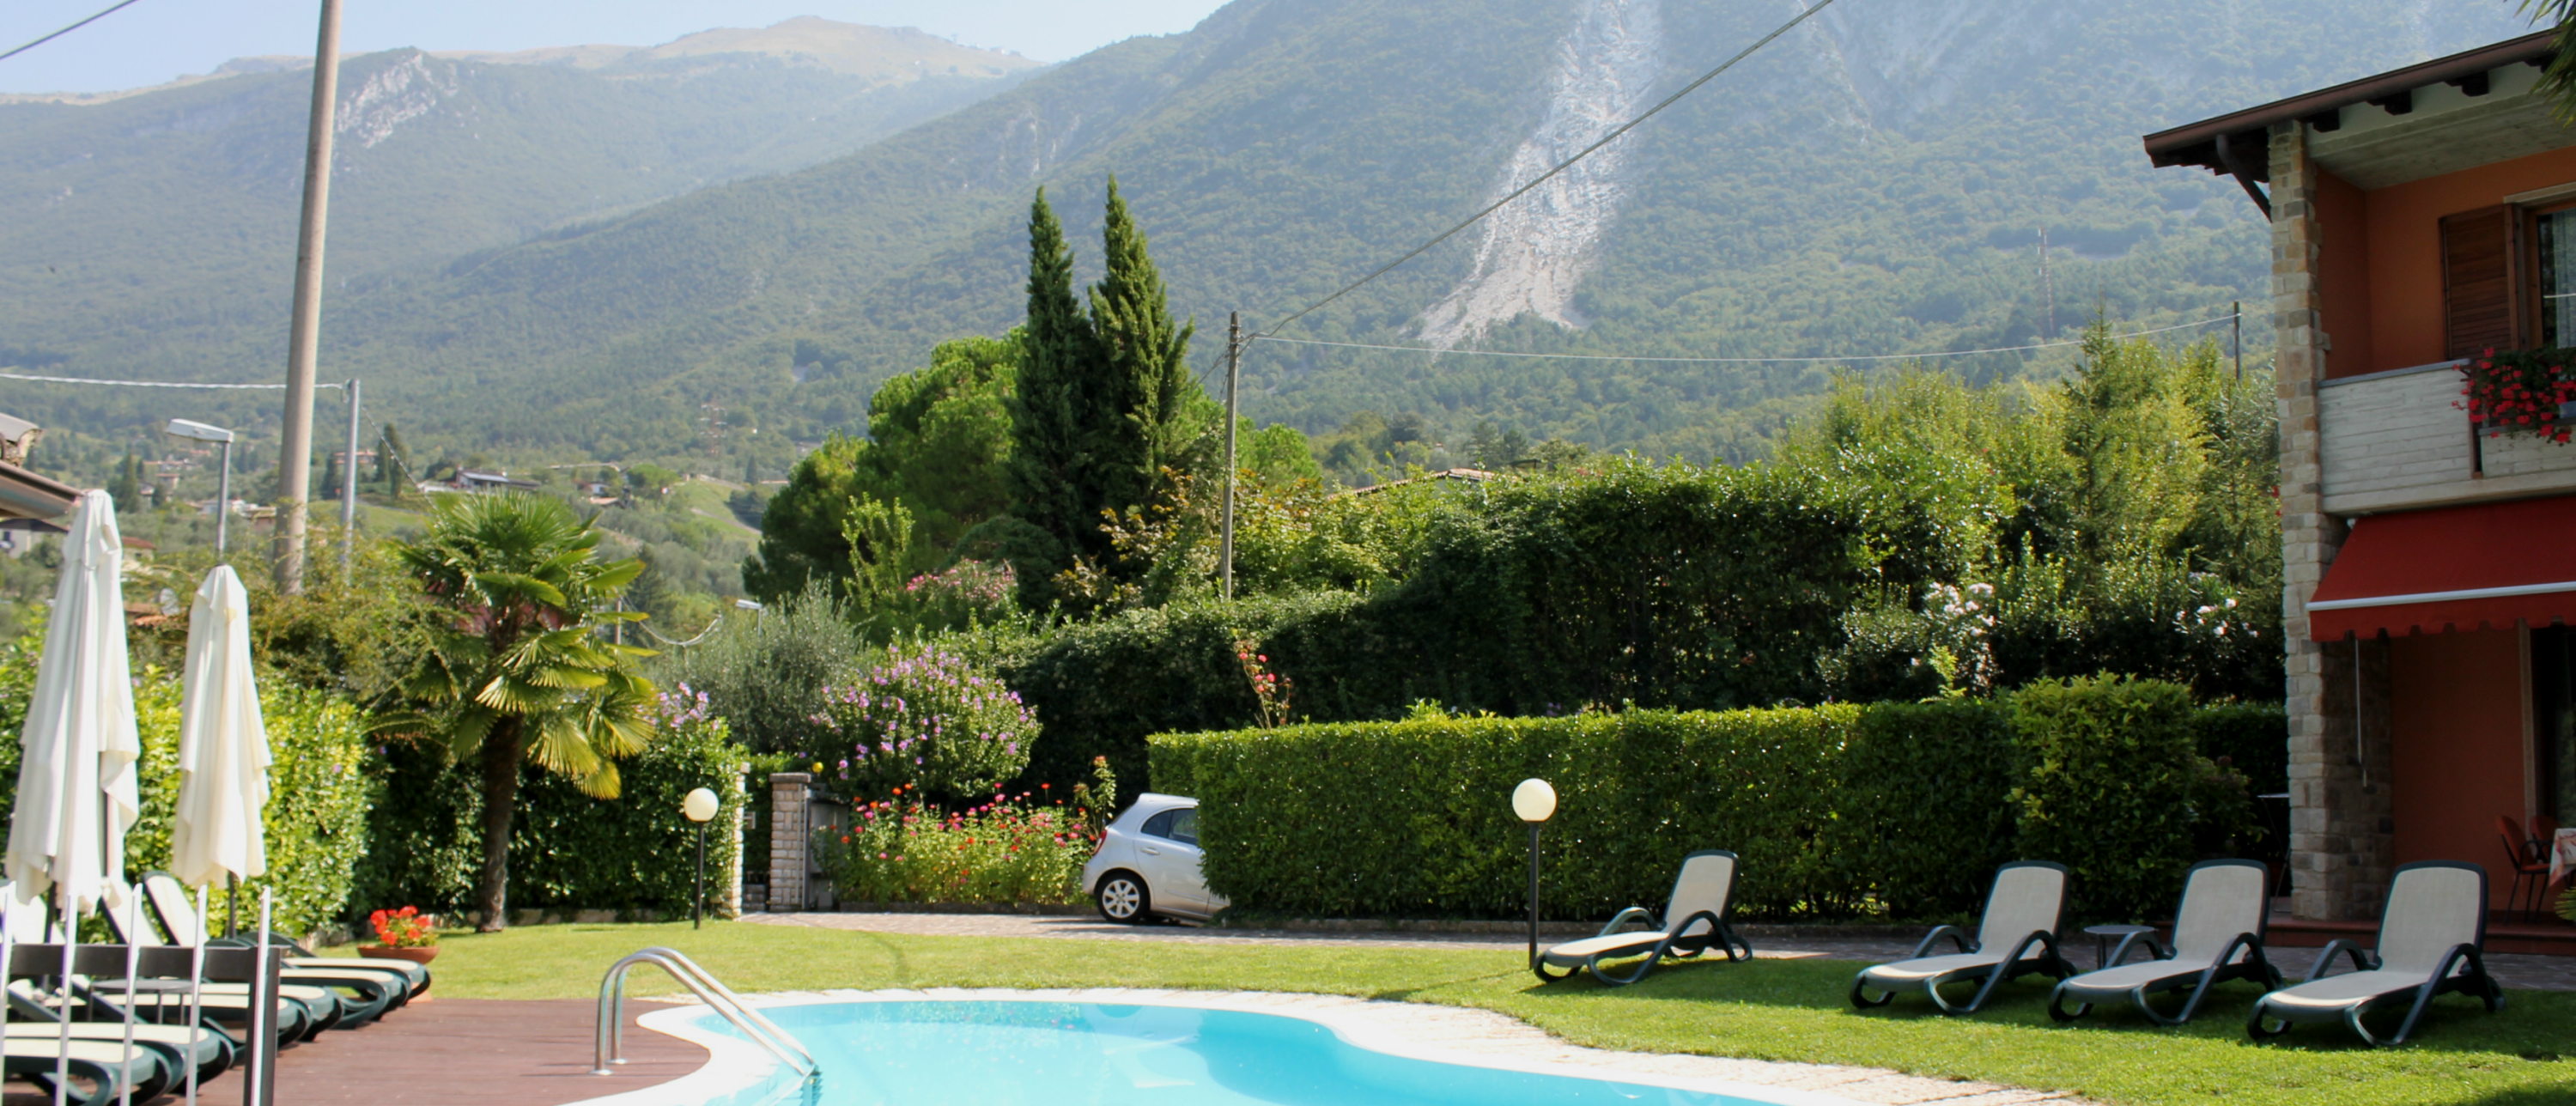 Foto der Villa Panoramica in den Hügeln am Fuße des Monte Baldo